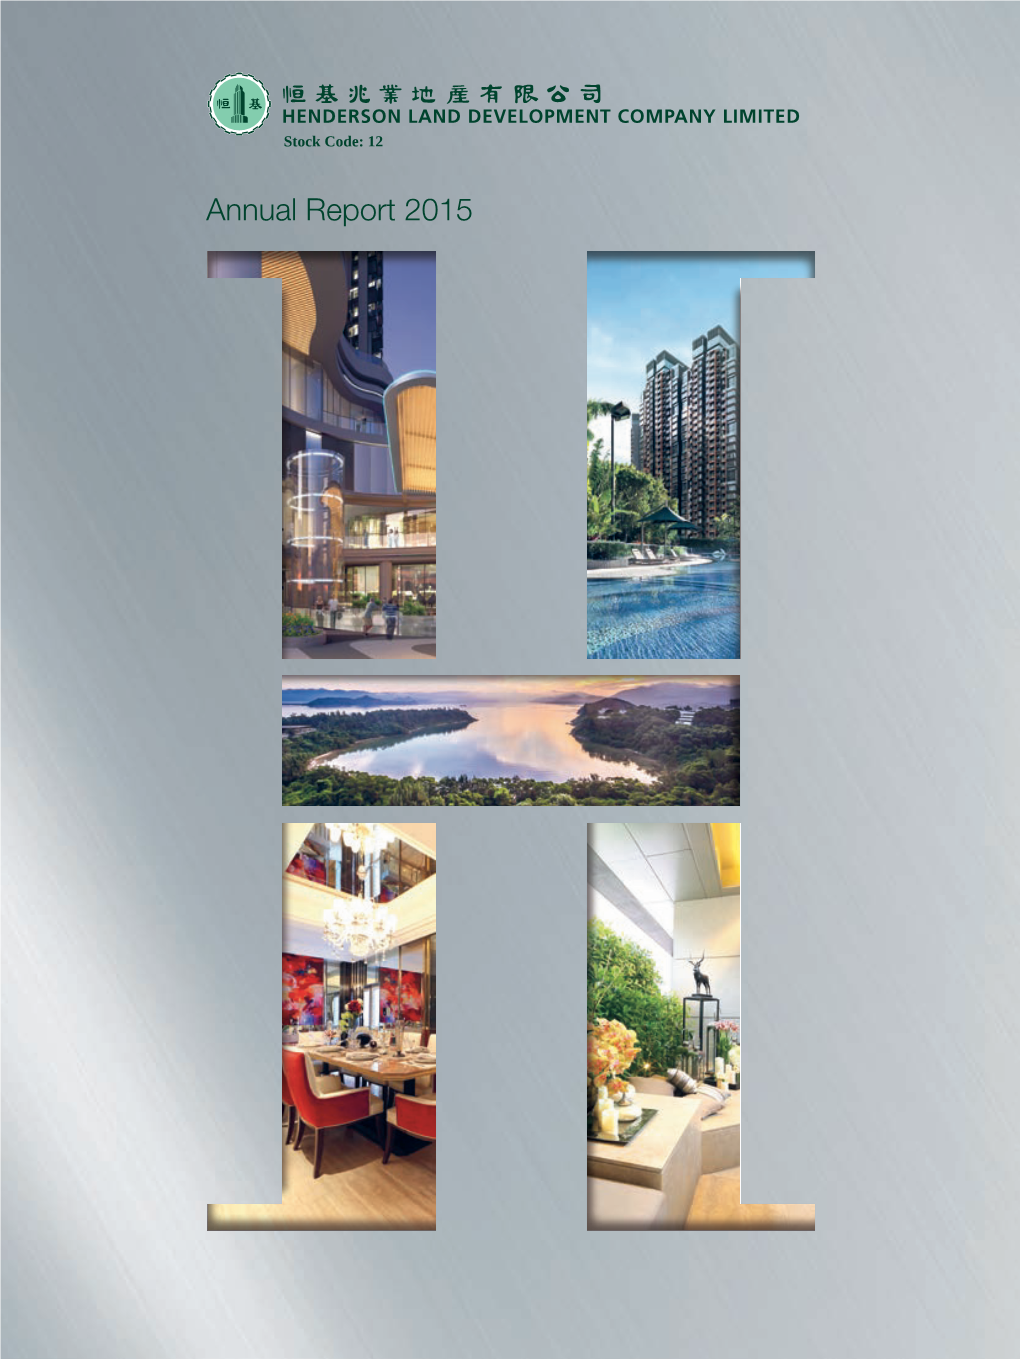 Annual Report 2015 Annual Report 2015 CORPORATE PROFILE